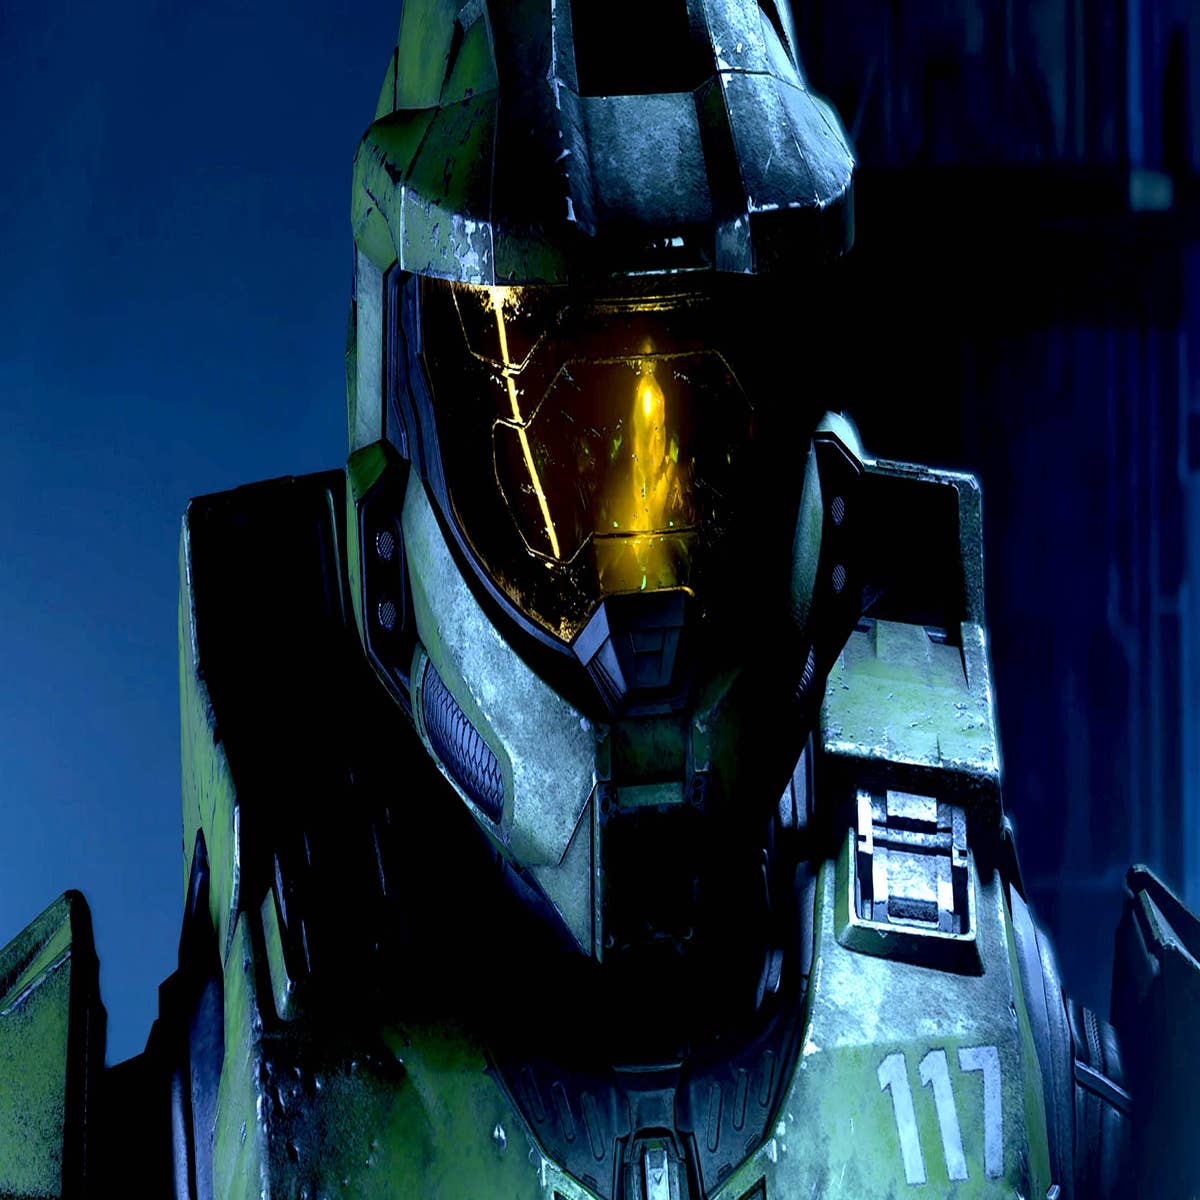 Halo Infinite chega em dezembro para PC e consoles Xbox